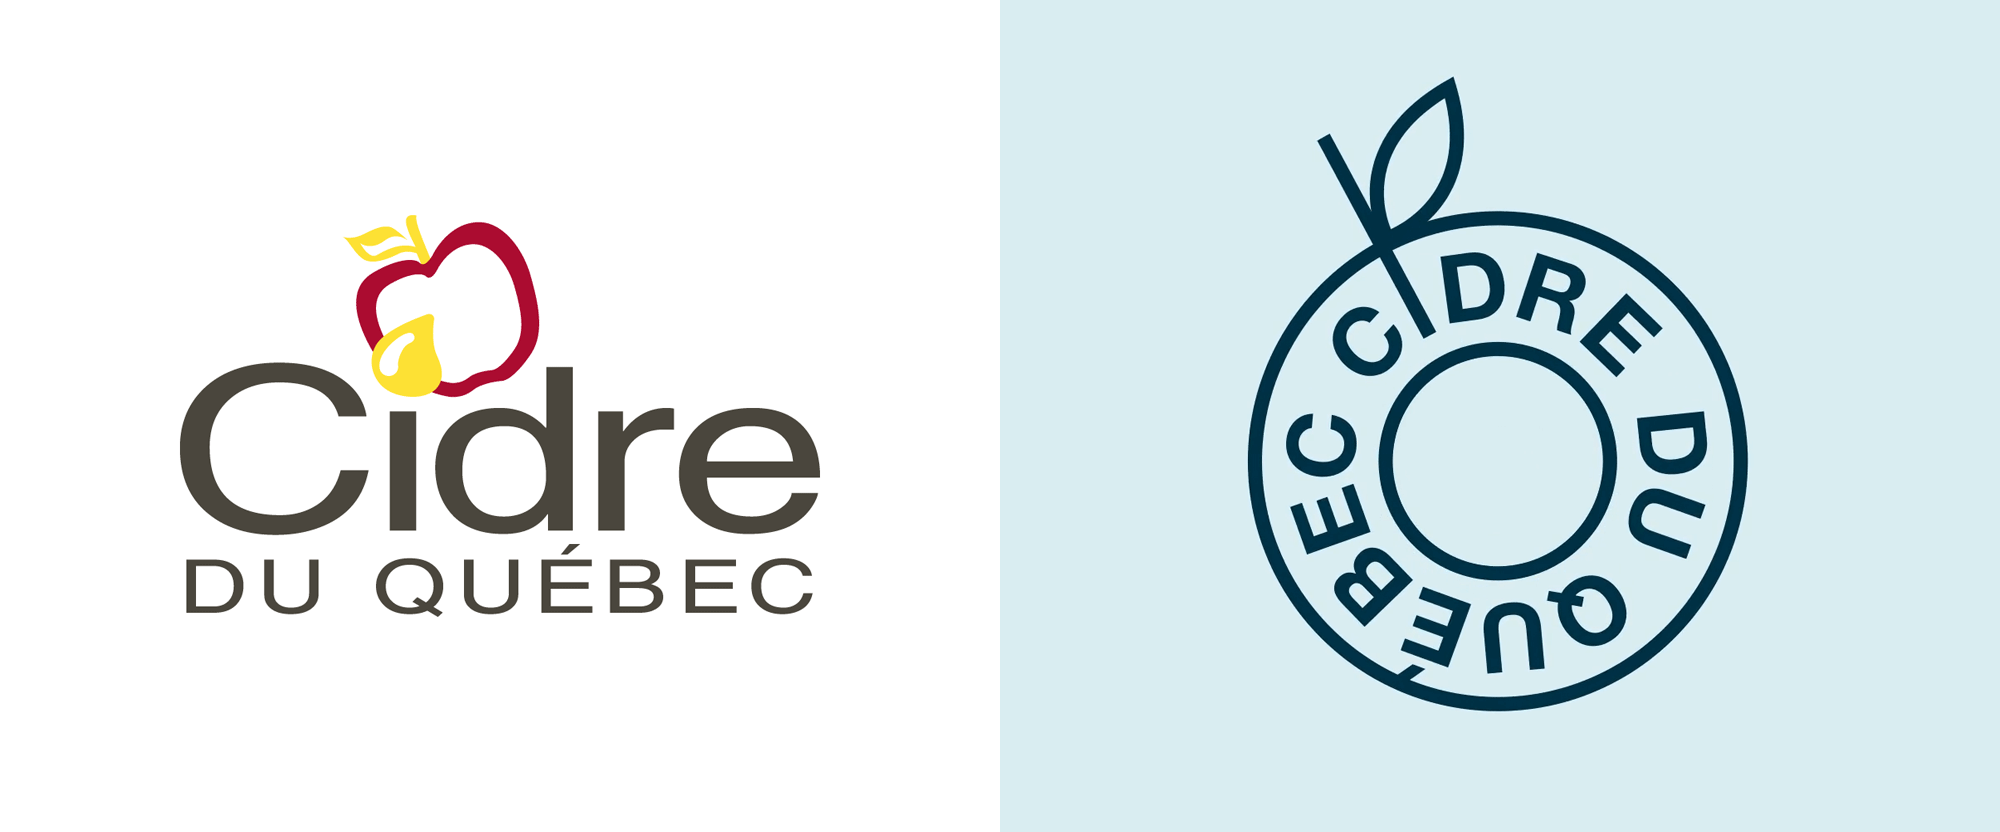 New Logo and Identity for Producteurs de Cidre du Québec by lg2